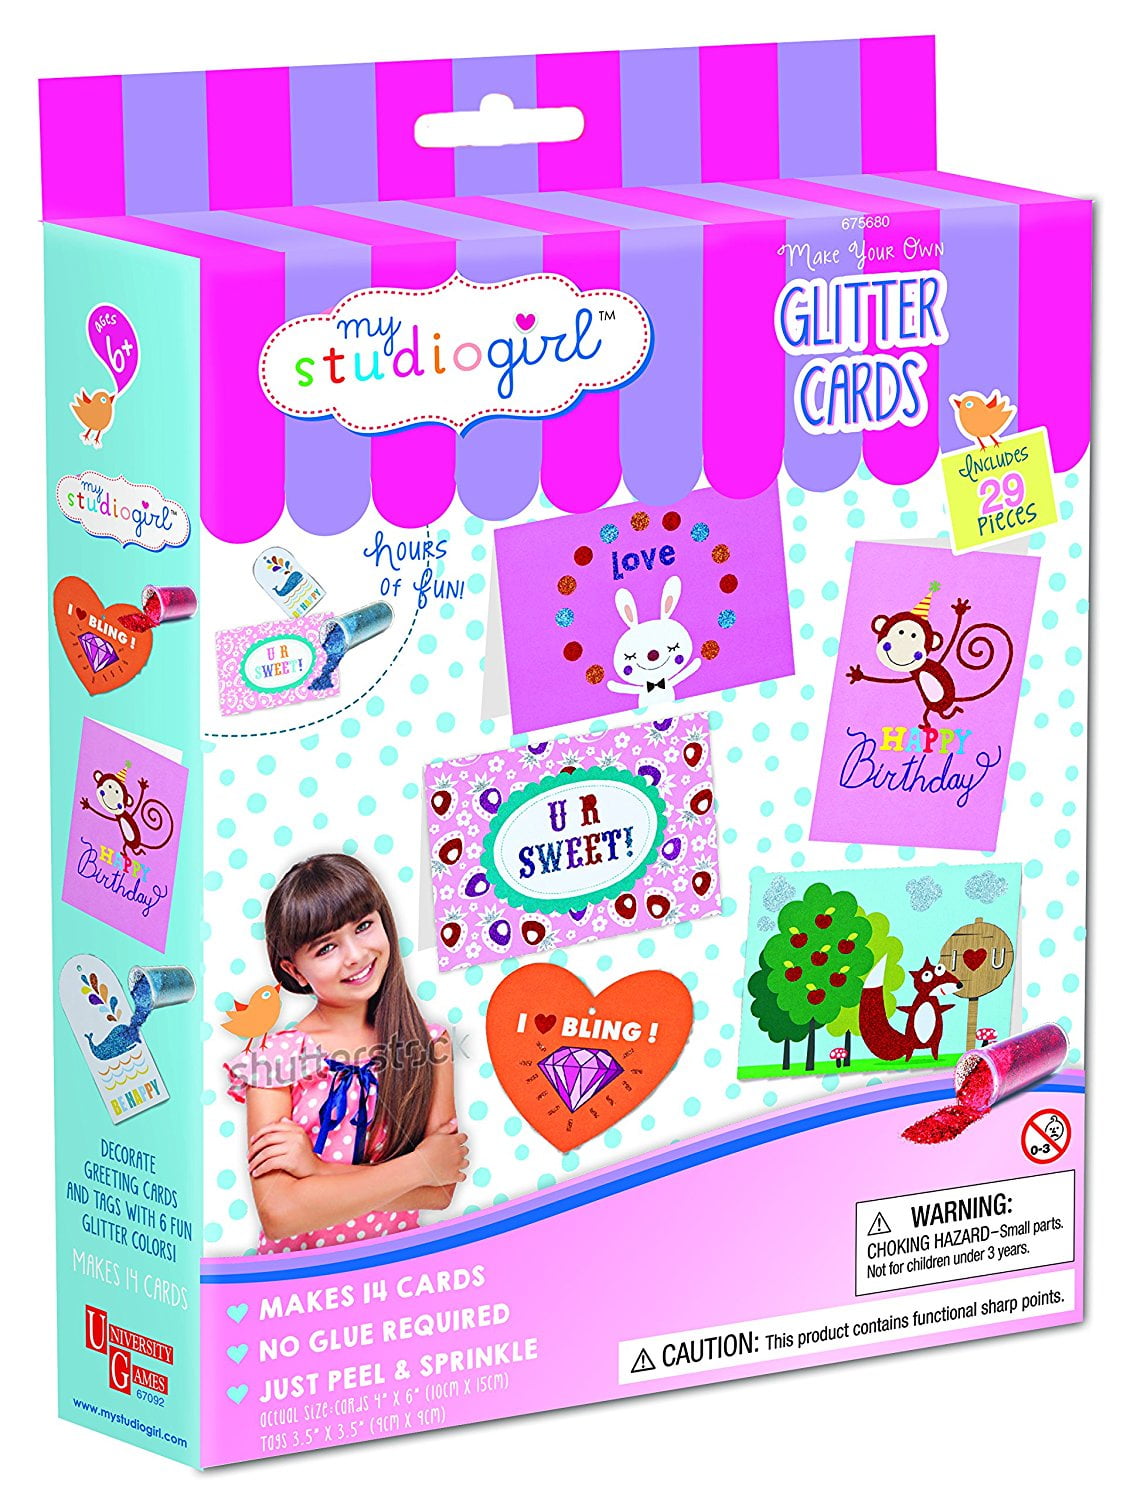 GirlZone Mermaid Stationary Gift Set for Girls, 45 piece Girls 9